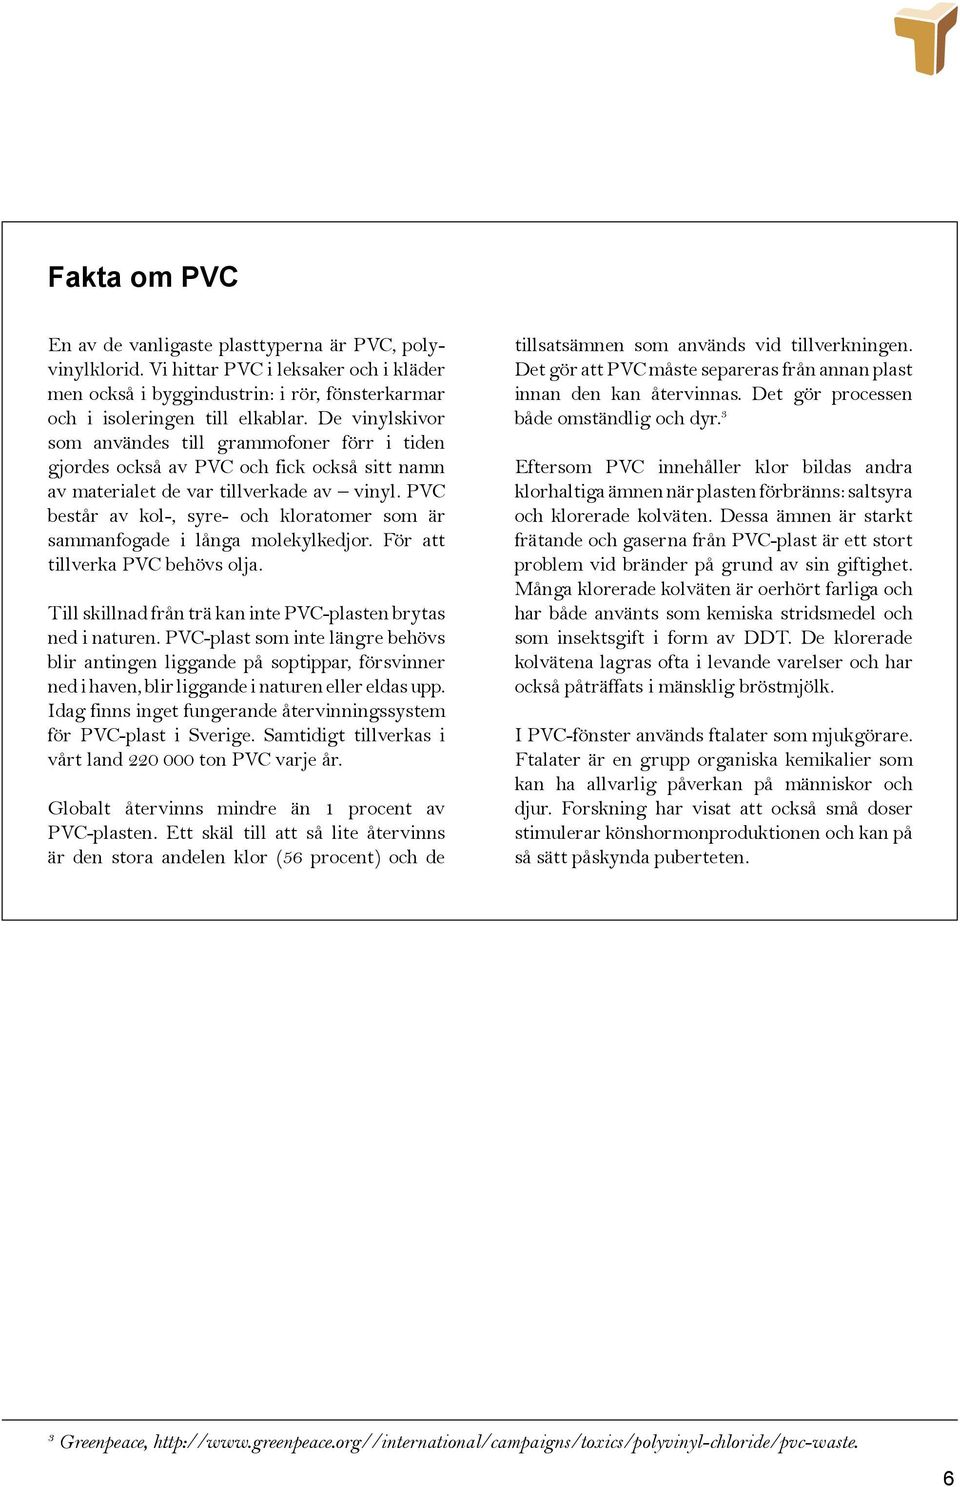 PVC består av kol-, syre- och kloratomer som är sammanfogade i långa molekylkedjor. För att tillverka PVC behövs olja. Till skillnad från trä kan inte PVC-plasten brytas ned i naturen.